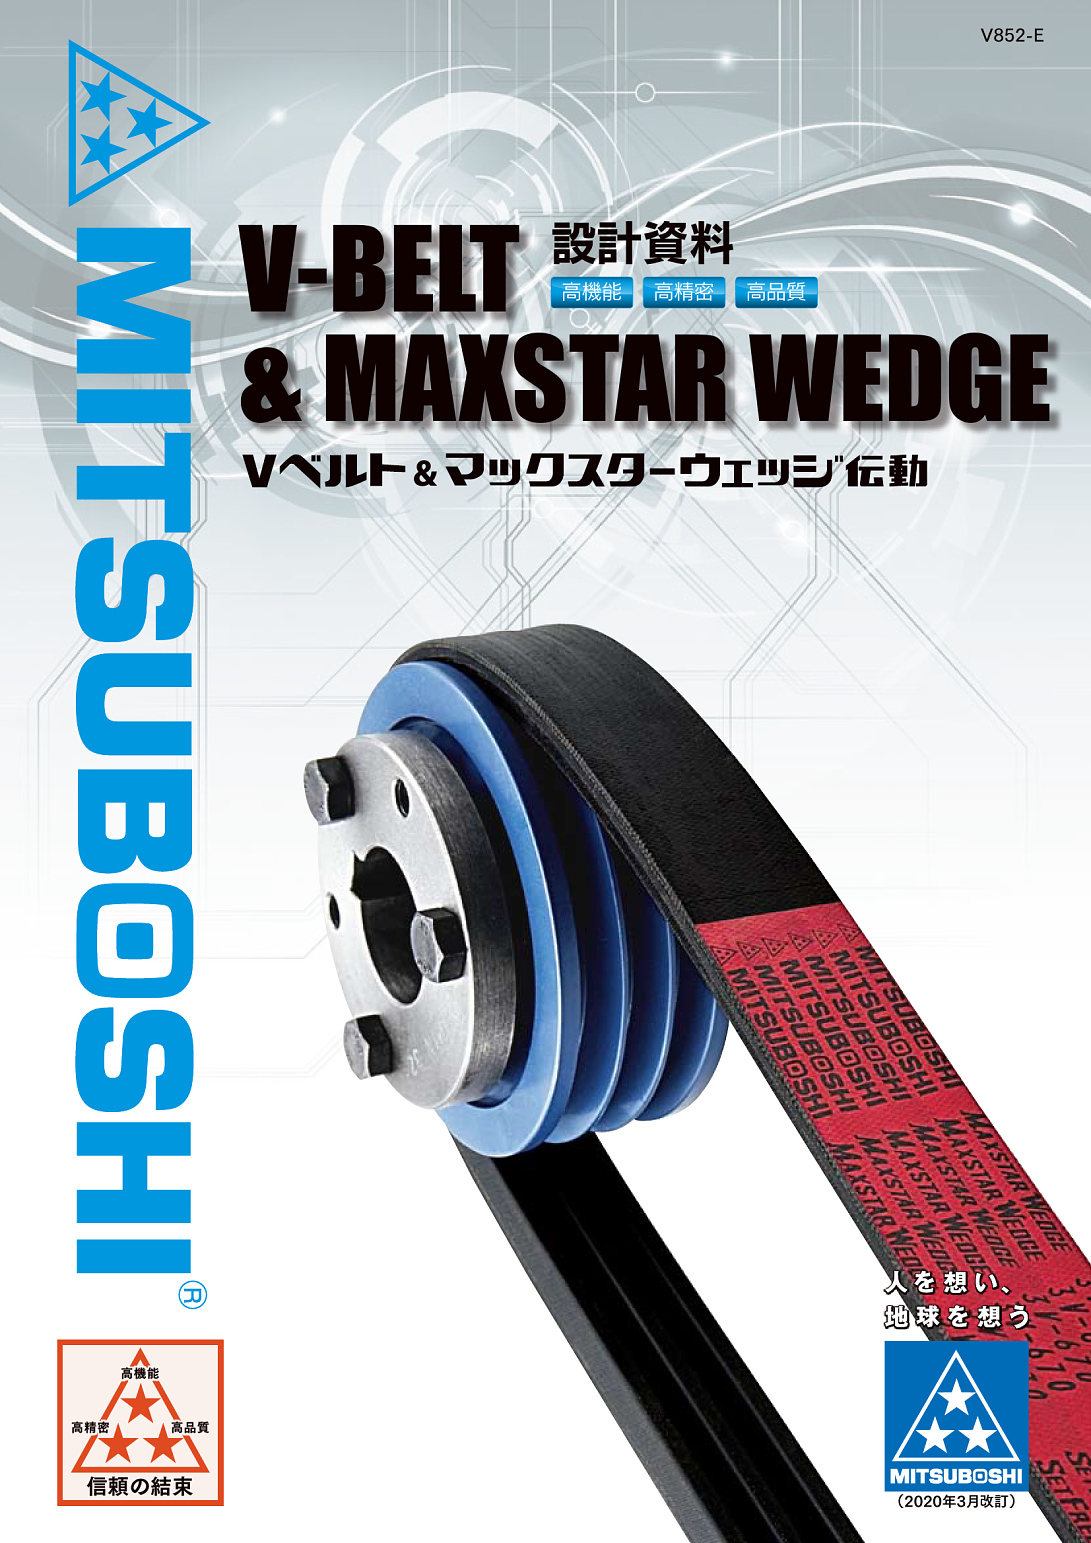 日本製 三ツ星ベルト 8V-4250 マックスターウエッジベルト - 金物、部品